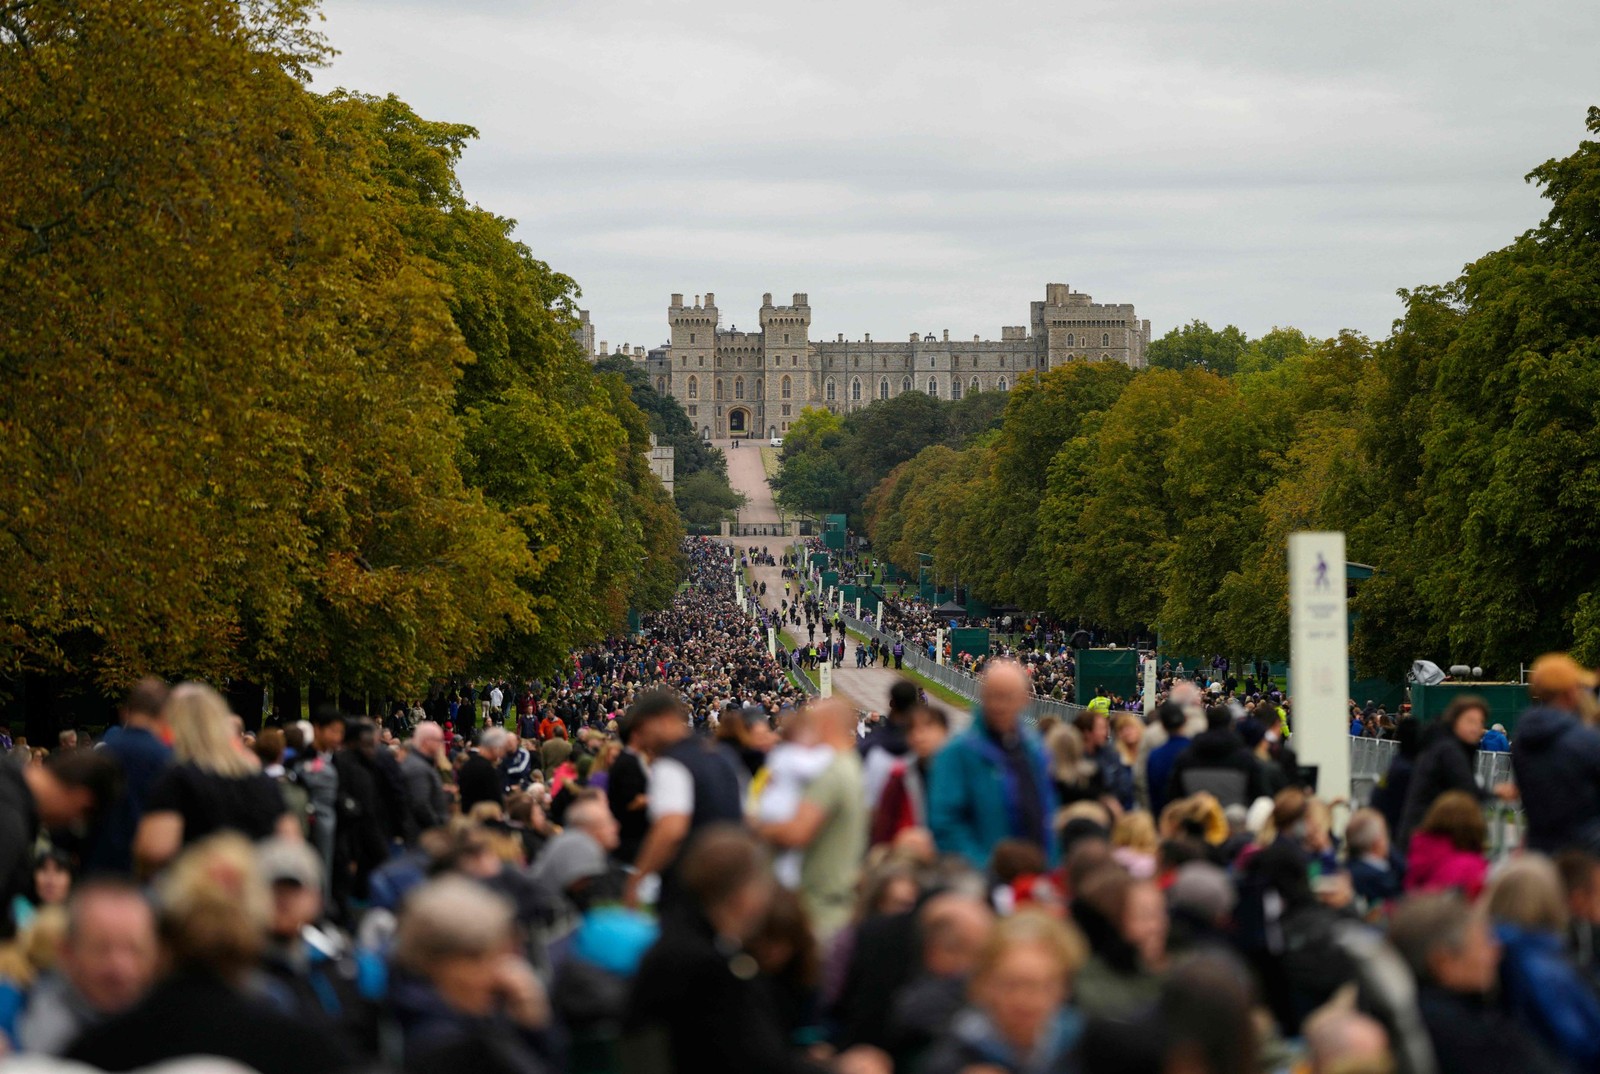 Perto do Castelo de Windsor, pessoas aguardam para ver o corpo da rainha Elizabeth II — Foto: Alastair Grant/AFP)